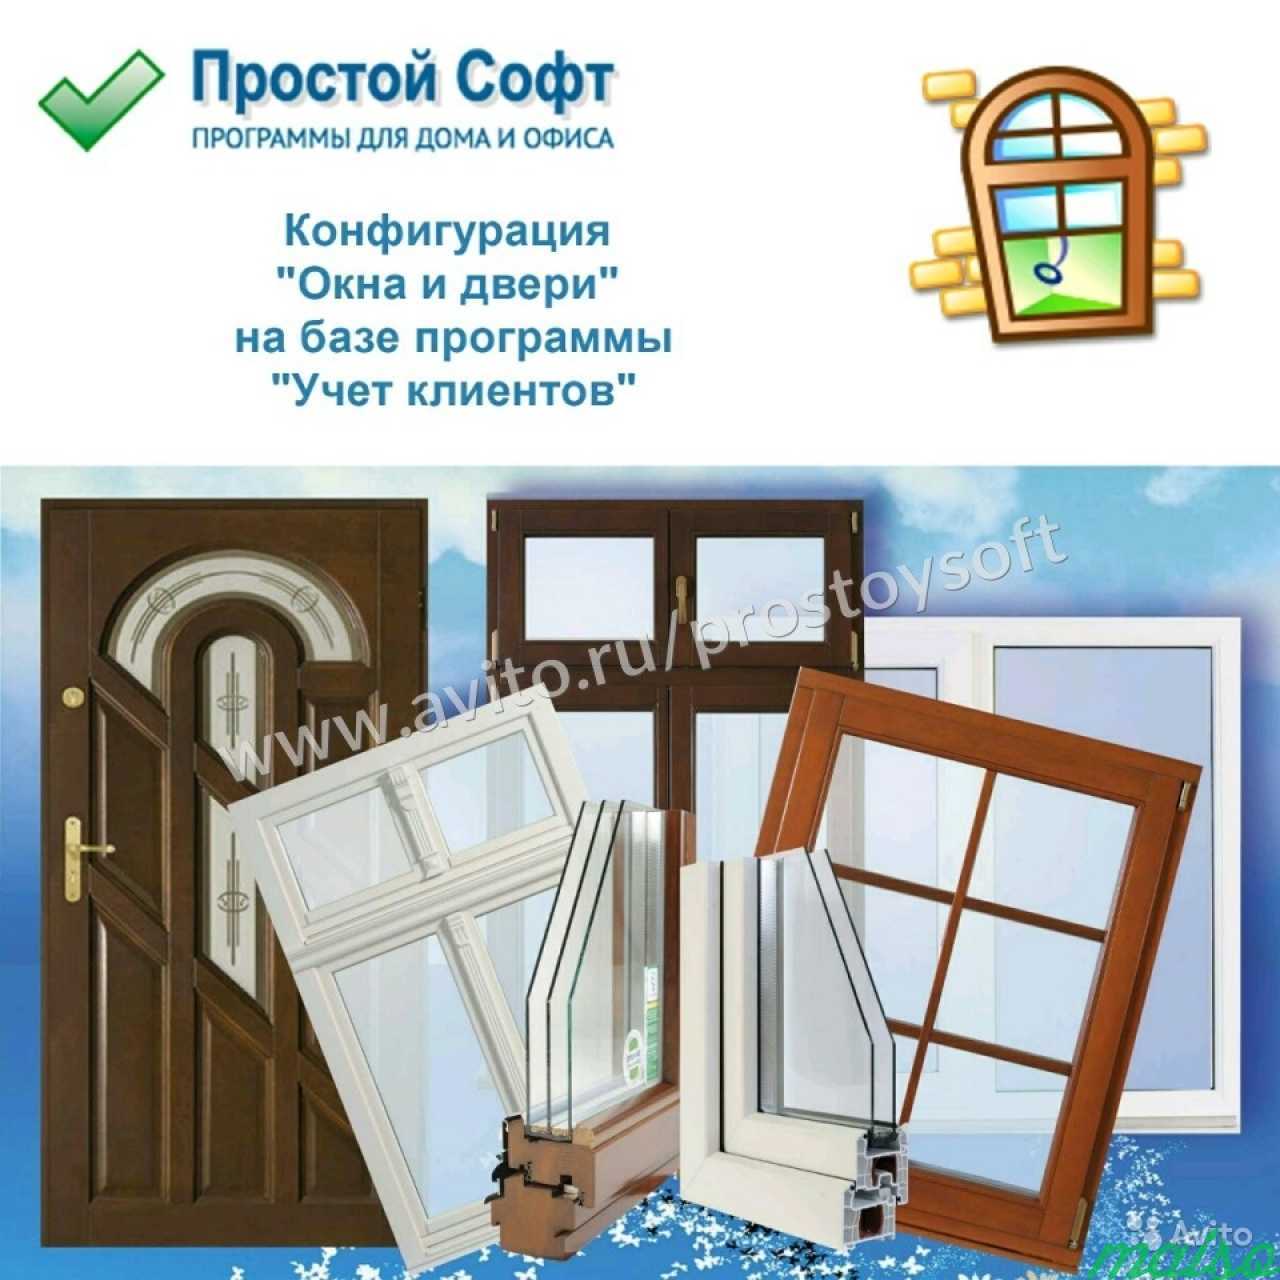 Конфигурация Окна и двери в Санкт-Петербурге. Фото 1